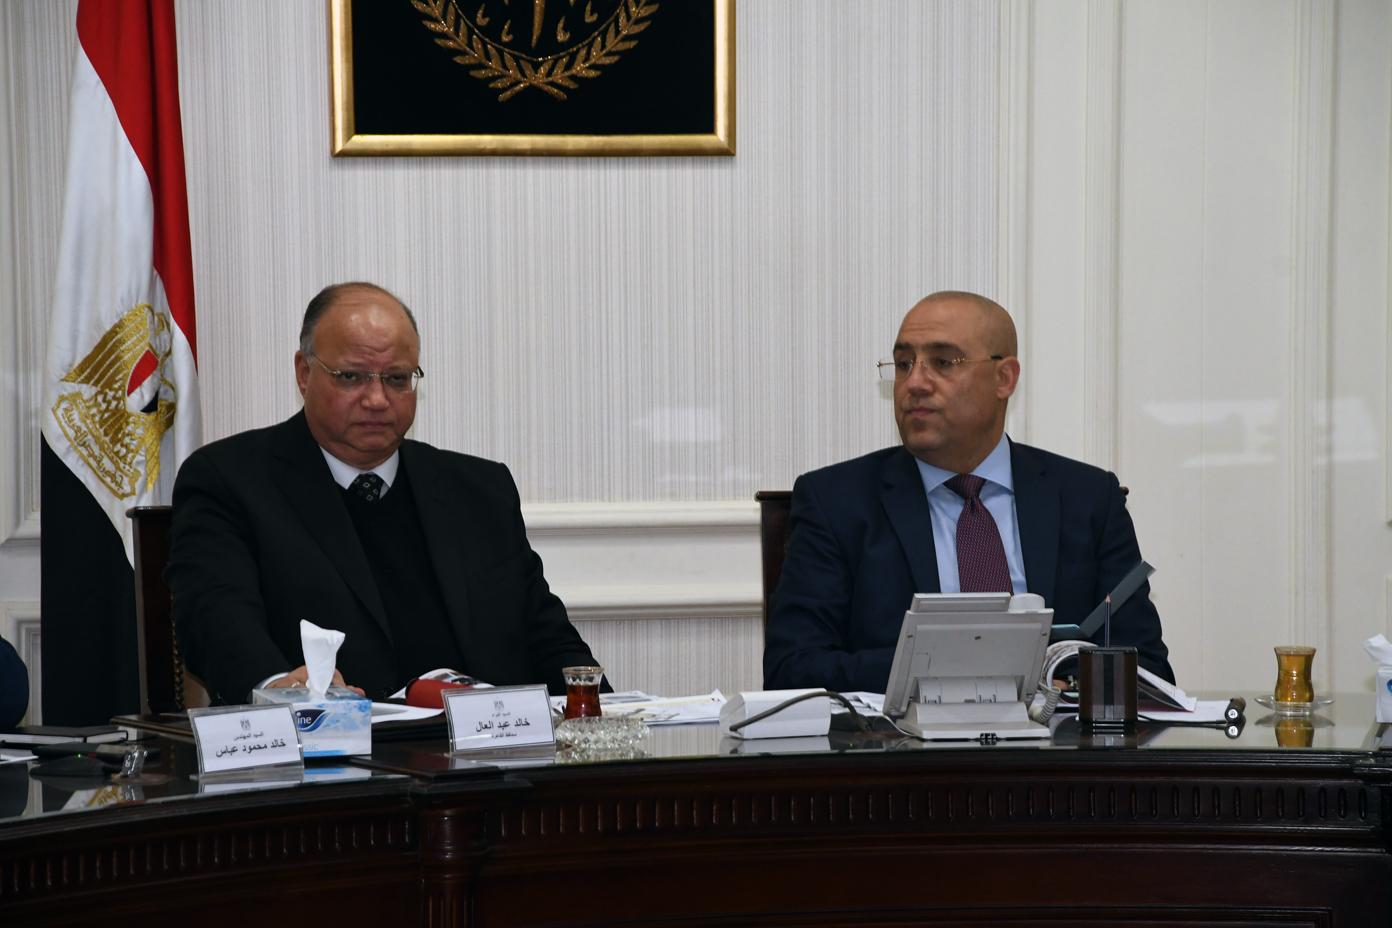   وزير الإسكان ومحافظ القاهرة يستعرضان مُخطط تطوير كنيسة العذراء بحى الزيتون